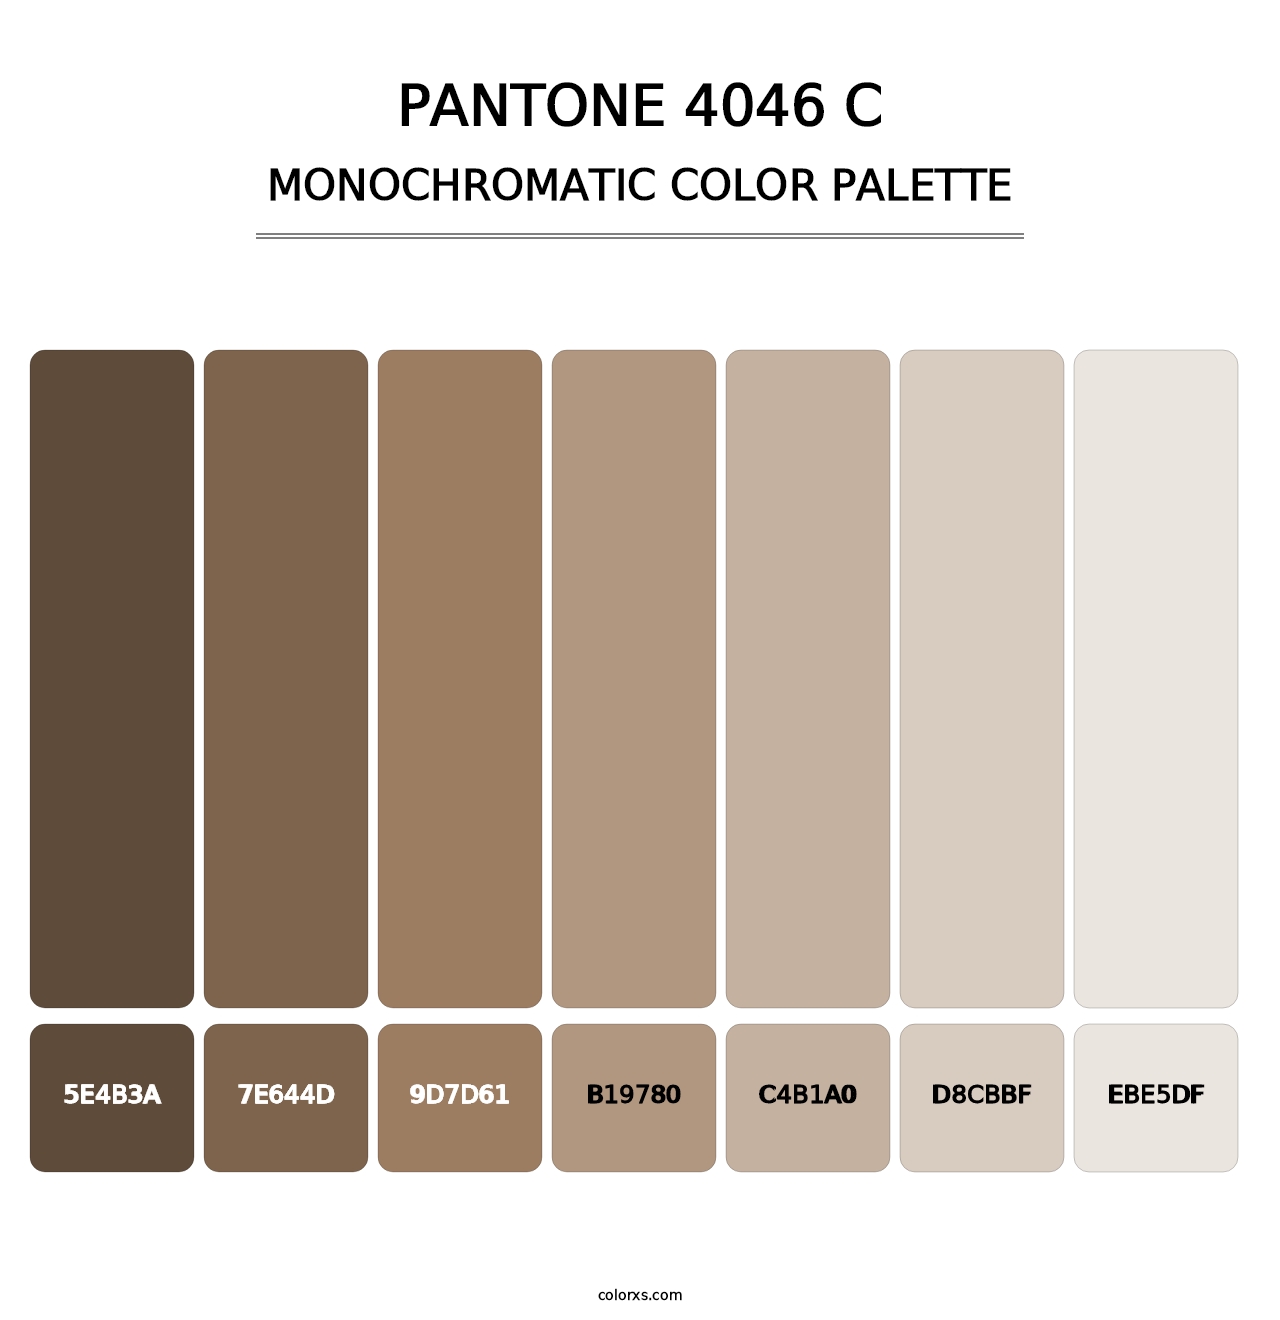 PANTONE 4046 C - Monochromatic Color Palette